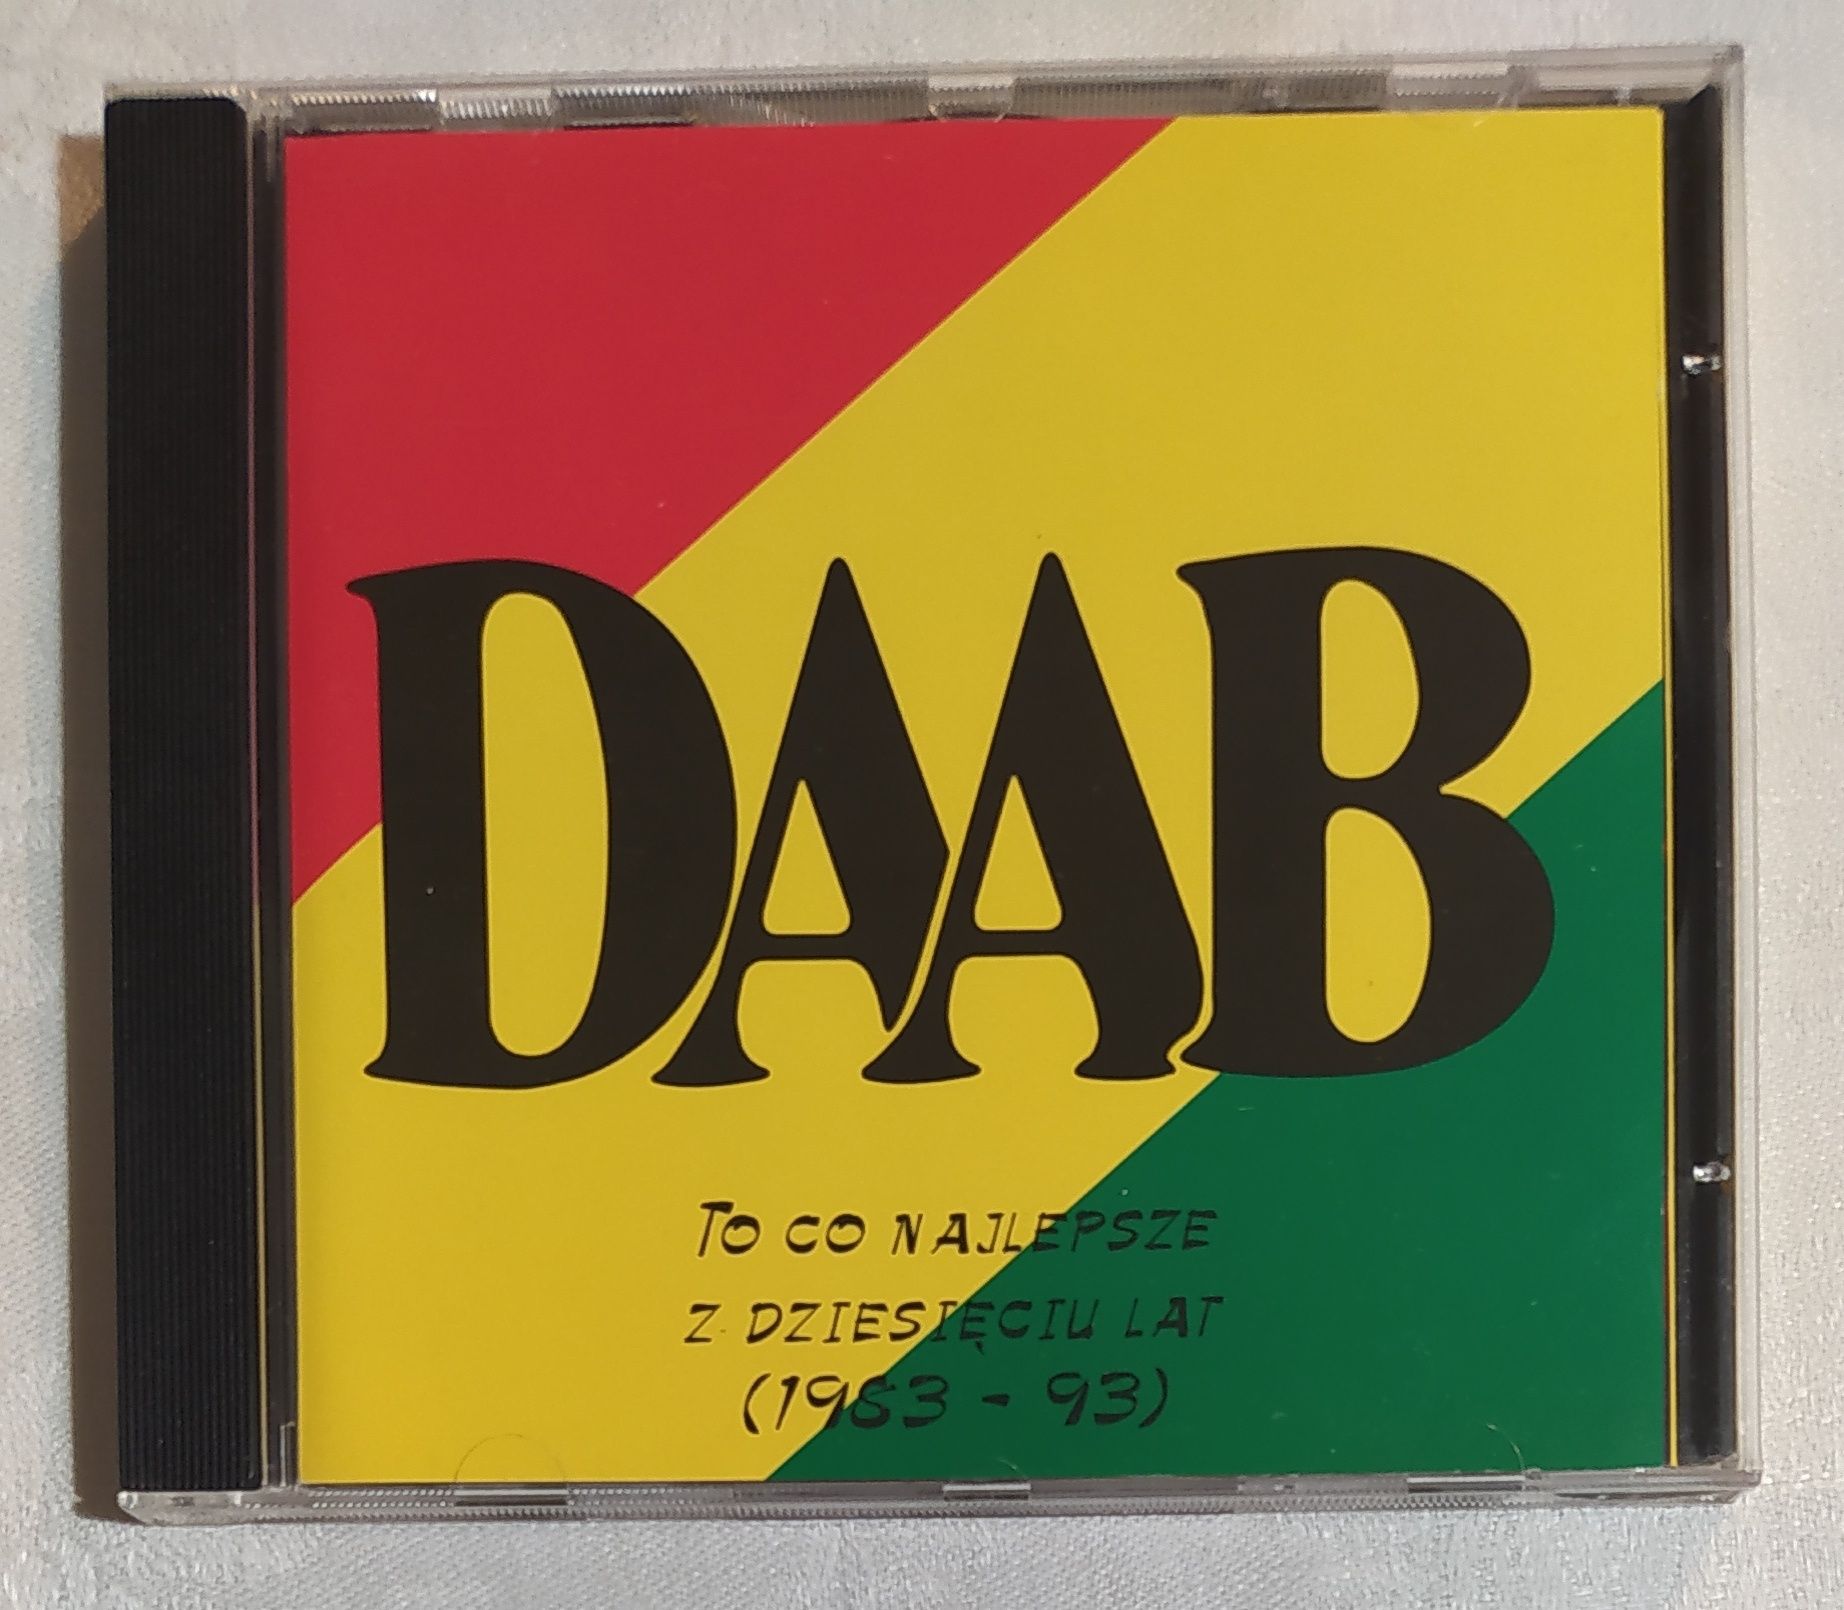 Płyta CD - Daab To Co Najlepsze z Dziesięciu Lat 1983-93 / wyd. 1996 r